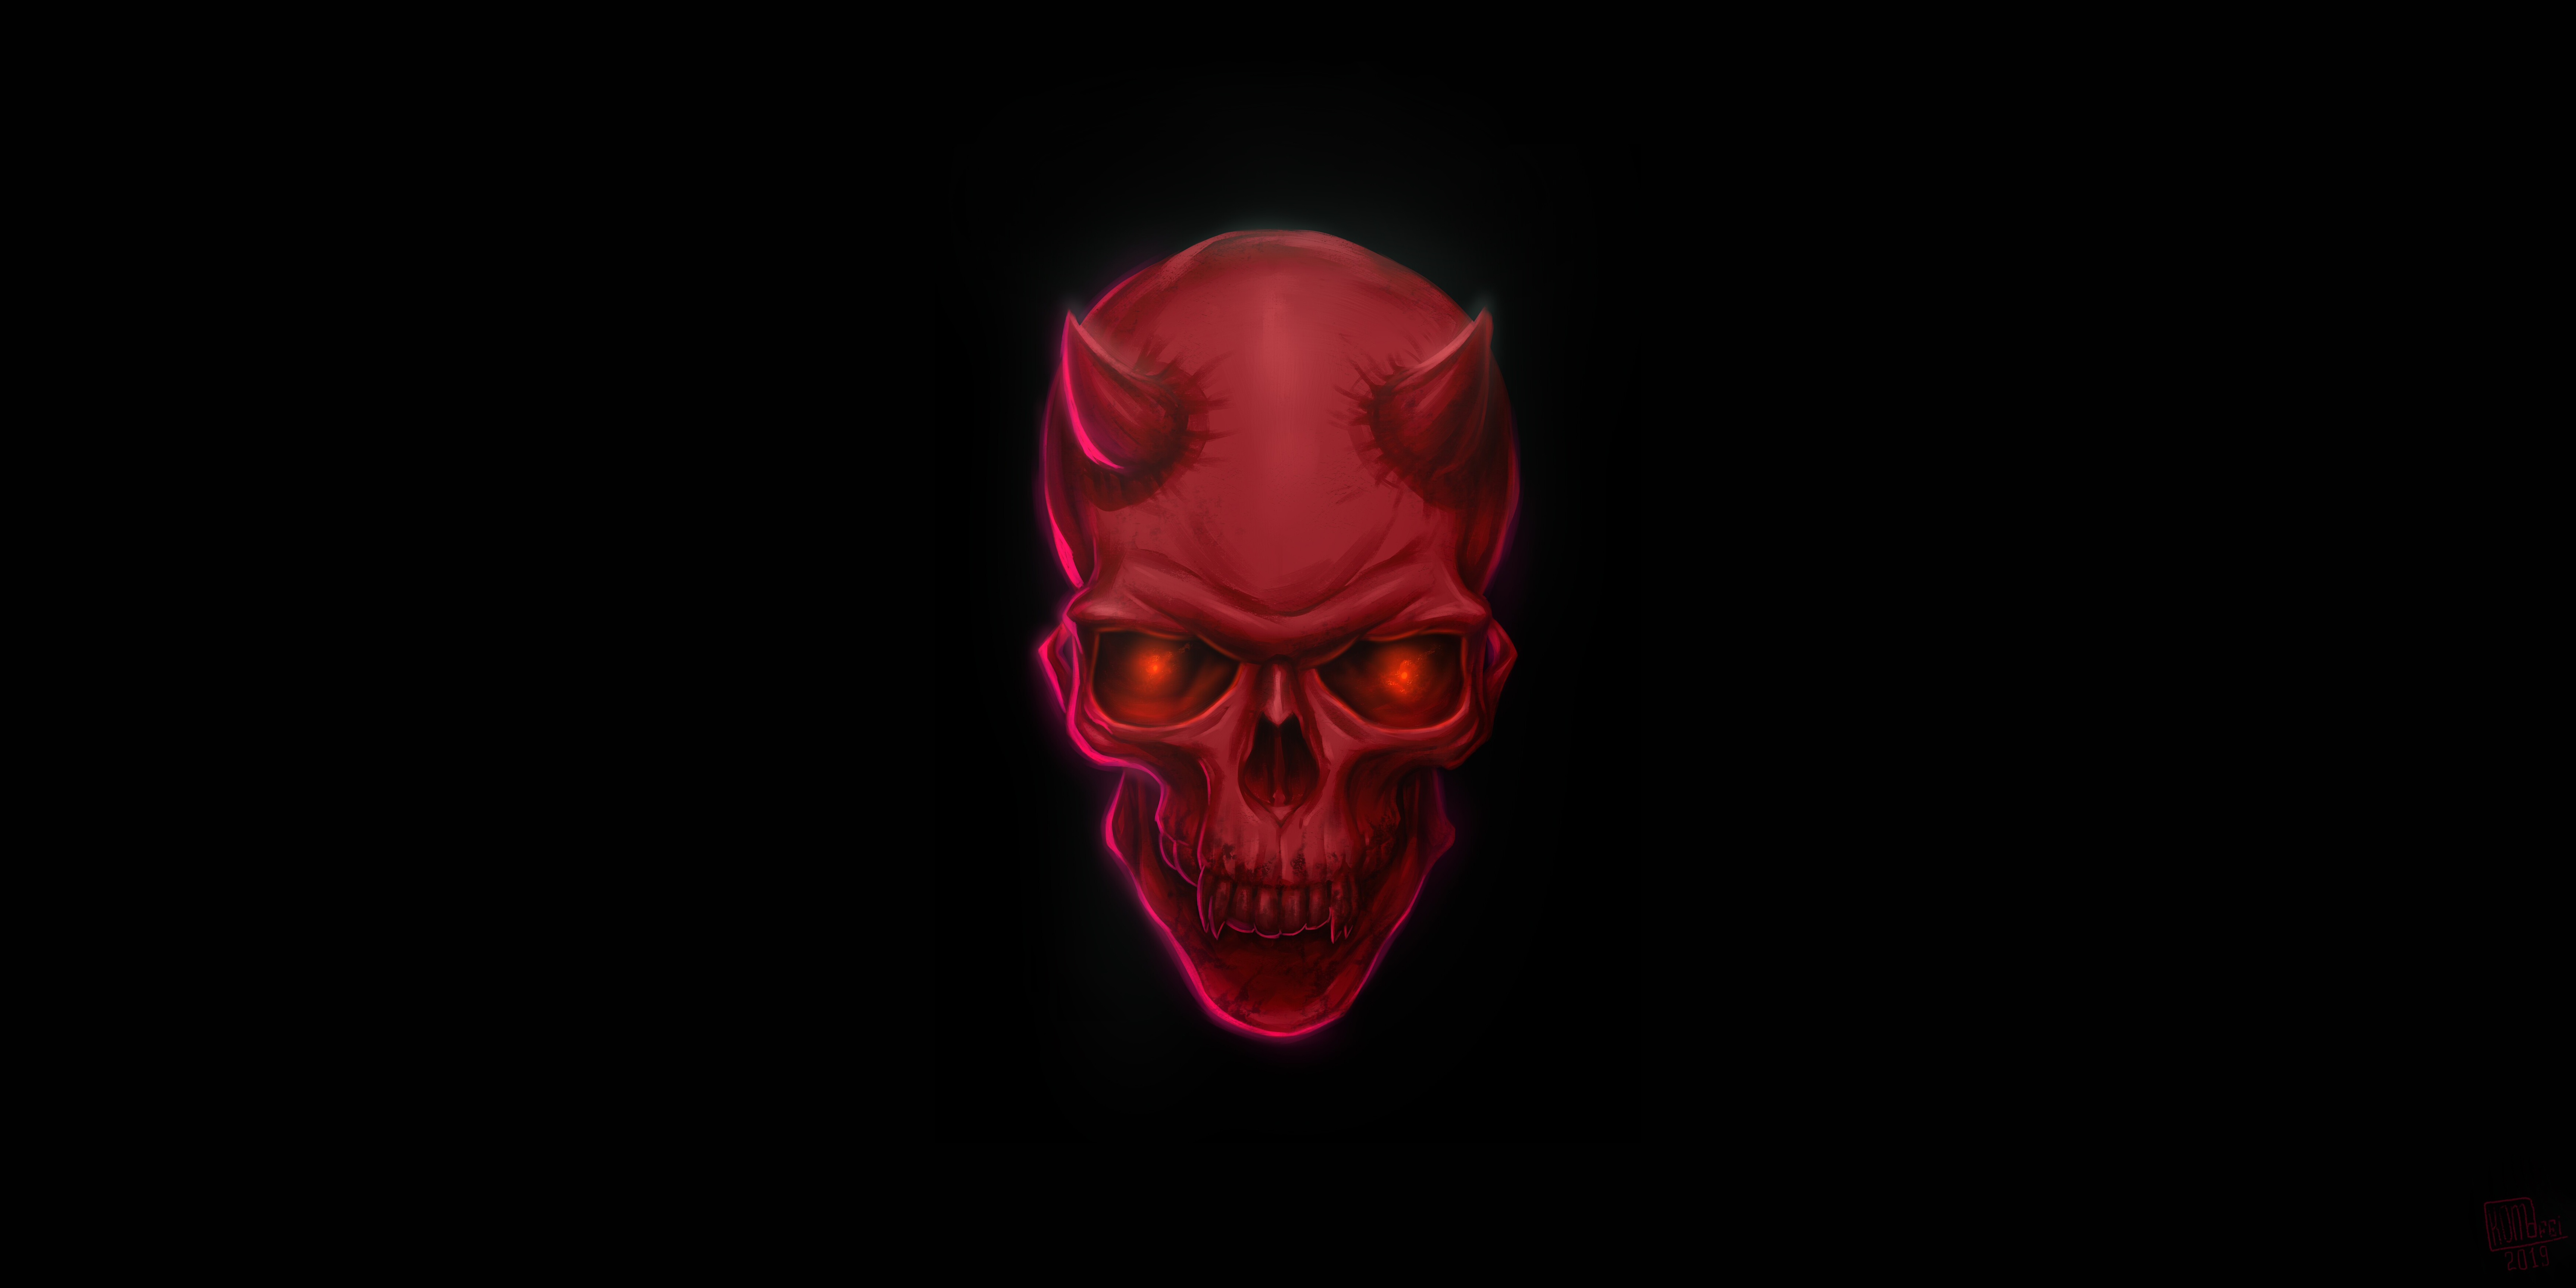 Nhìn vào hình ảnh Red Devil Skull, bạn sẽ cảm nhận được sức mạnh và sự uyển chuyển của bộ xương đầu quỷ đỏ rực này, đem đến cho không gian sống thêm phần đặc biệt.